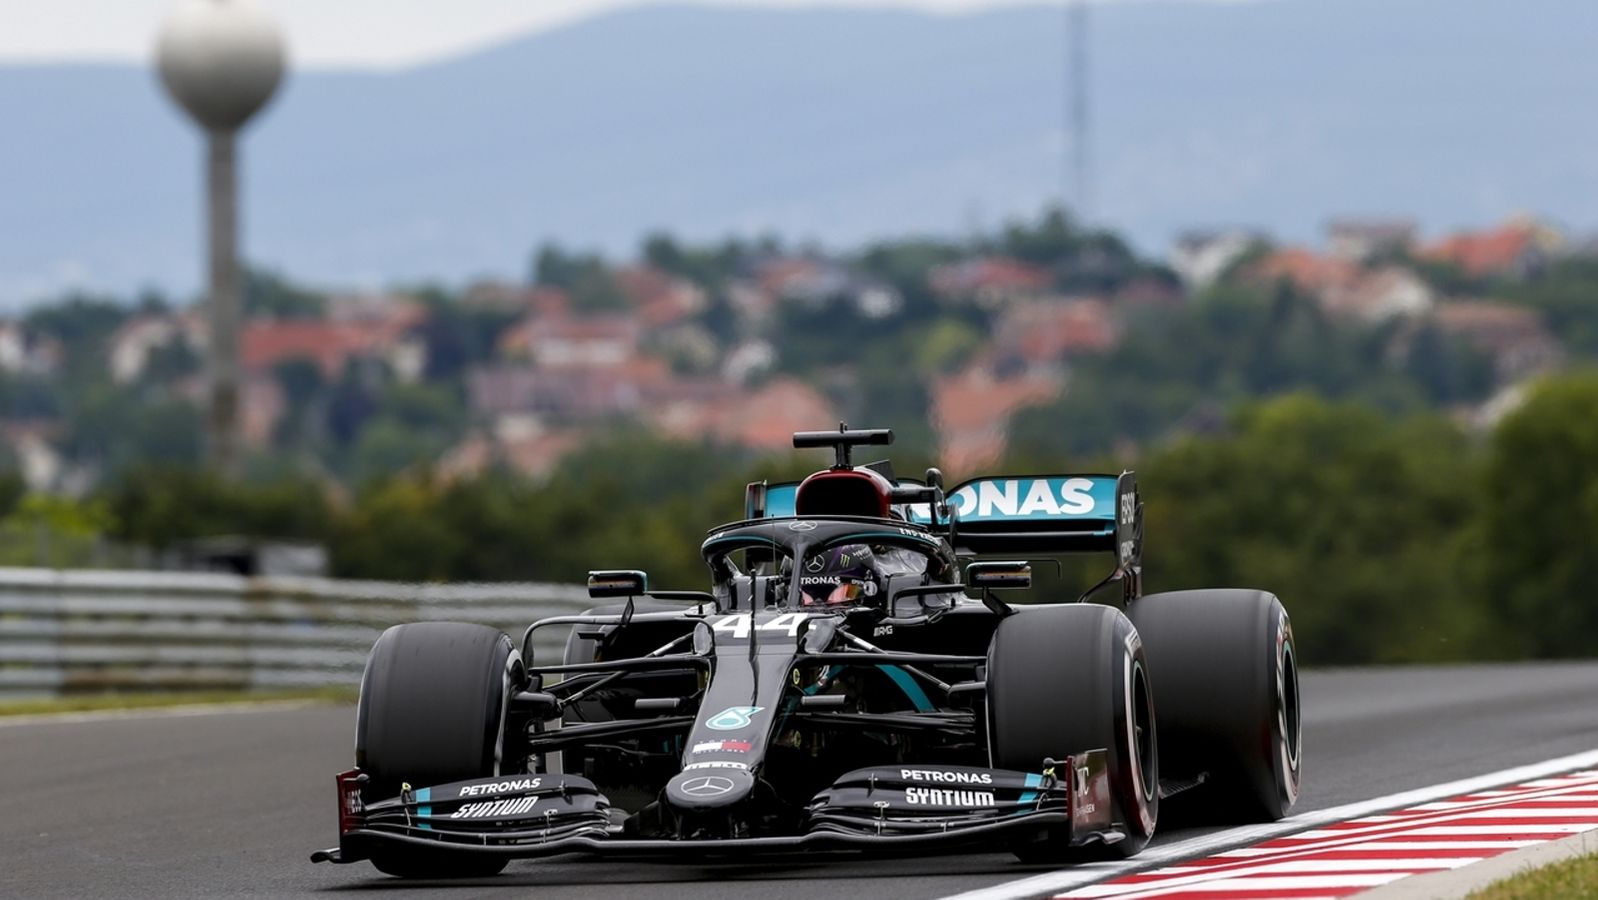 Formel 1: Hamilton holt Pole in Ungarn - Vettel Fünfter